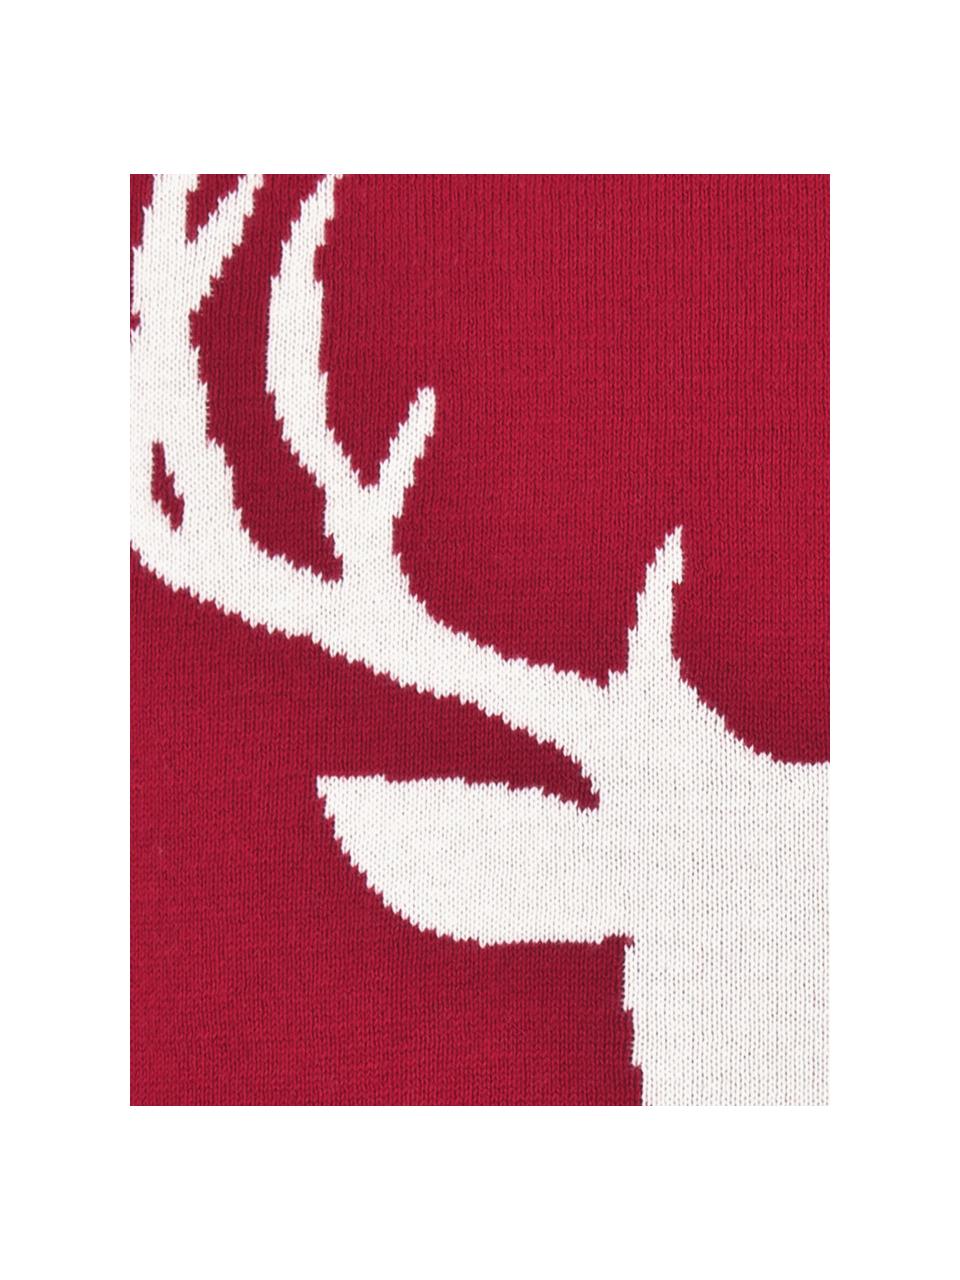 Strick-Kissenhülle Anders mit Hirschmotiv und Bommeln, Baumwolle, Rot, Cremeweiss, B 40 x L 40 cm